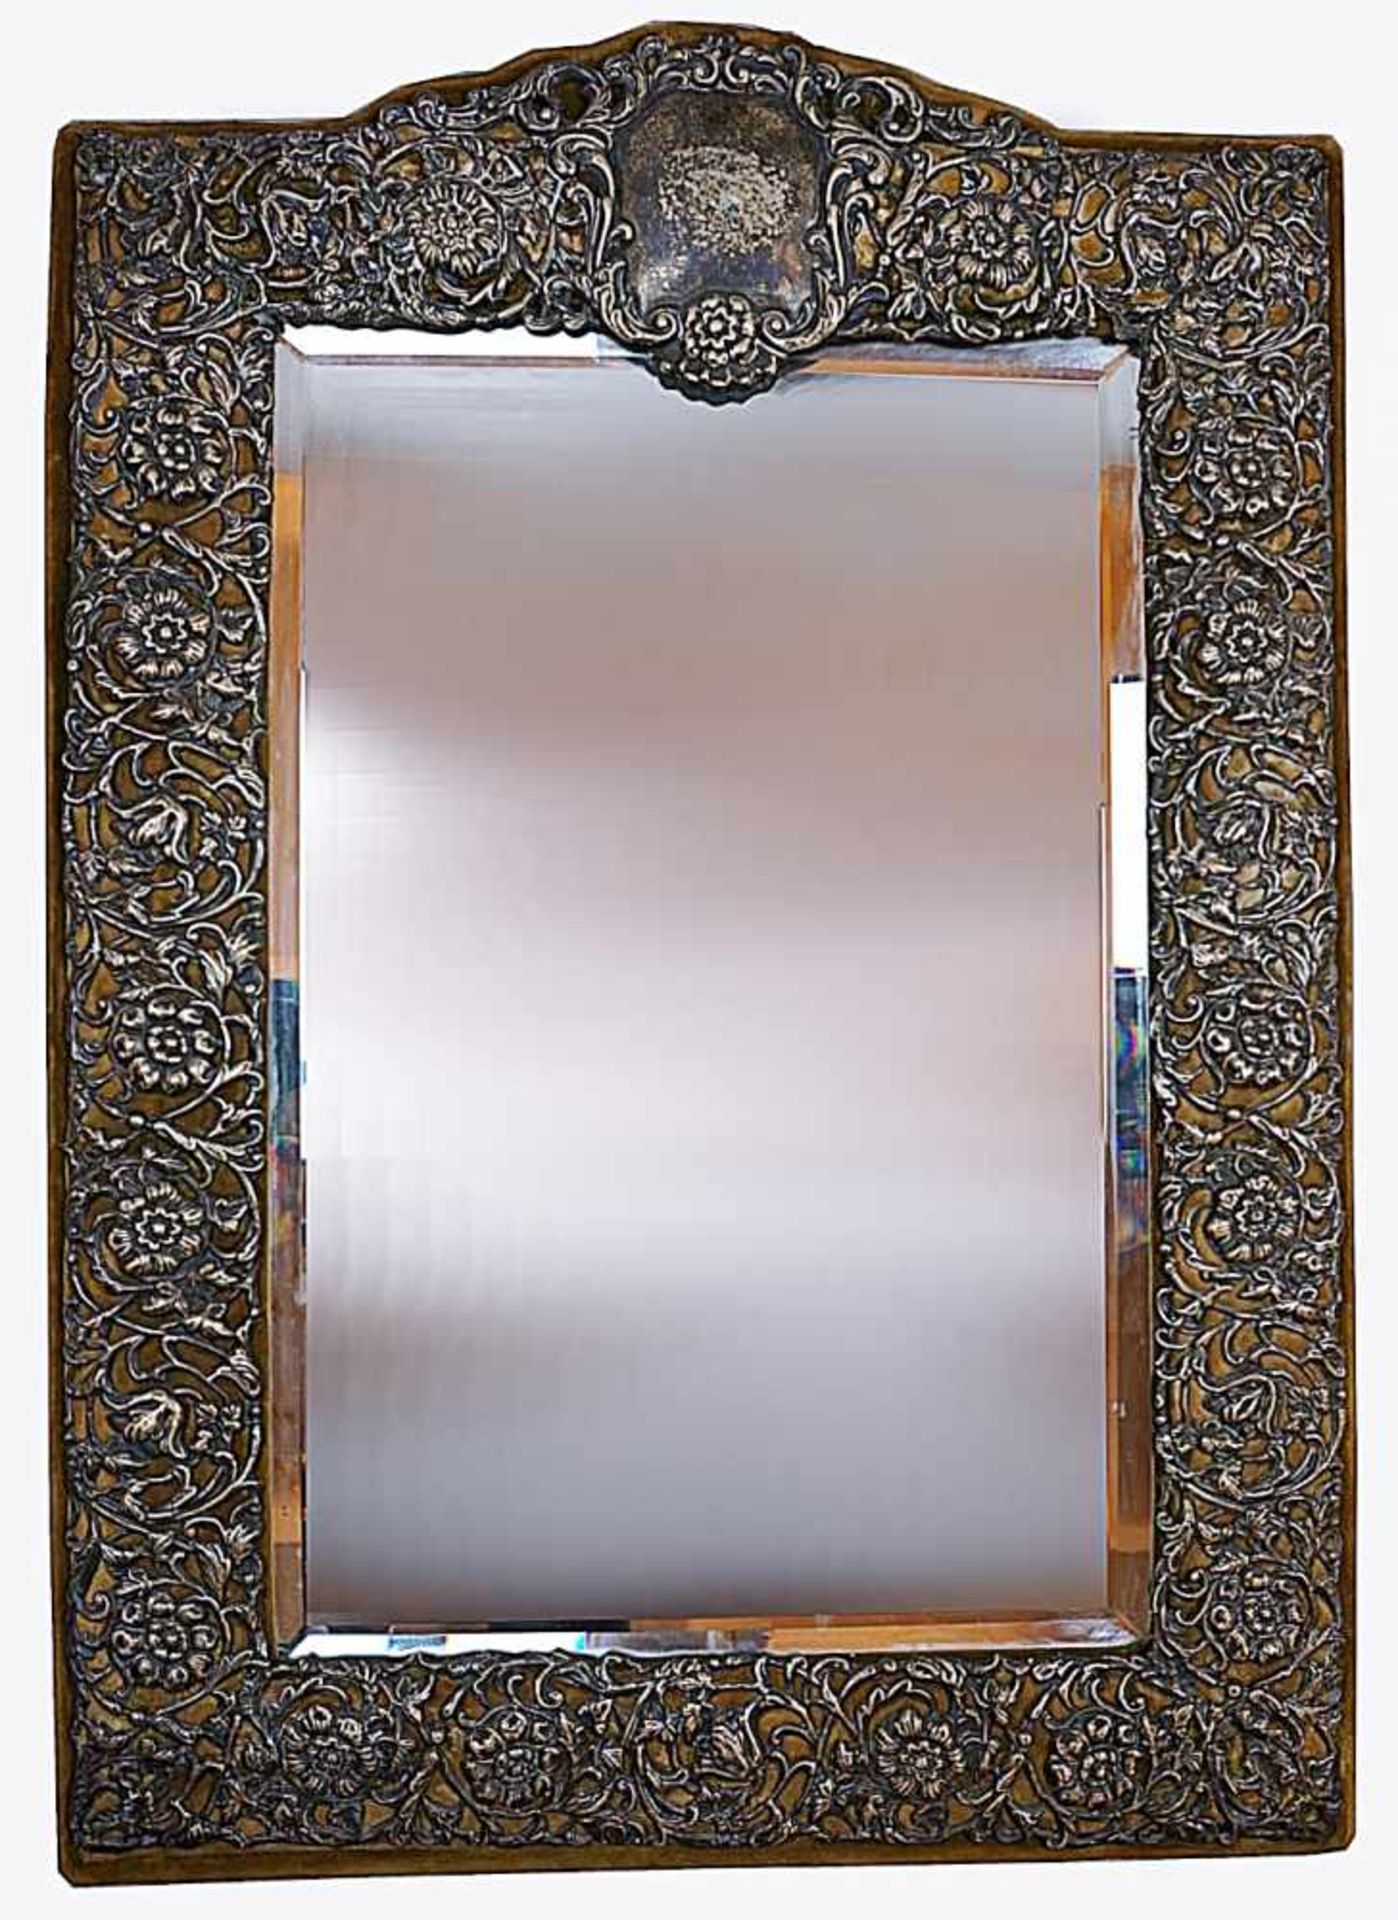 1 Spiegel Holz mit Samtbezug und Applikation Silberdekor W J MYATT & Co Ltd, Birmingham 1907